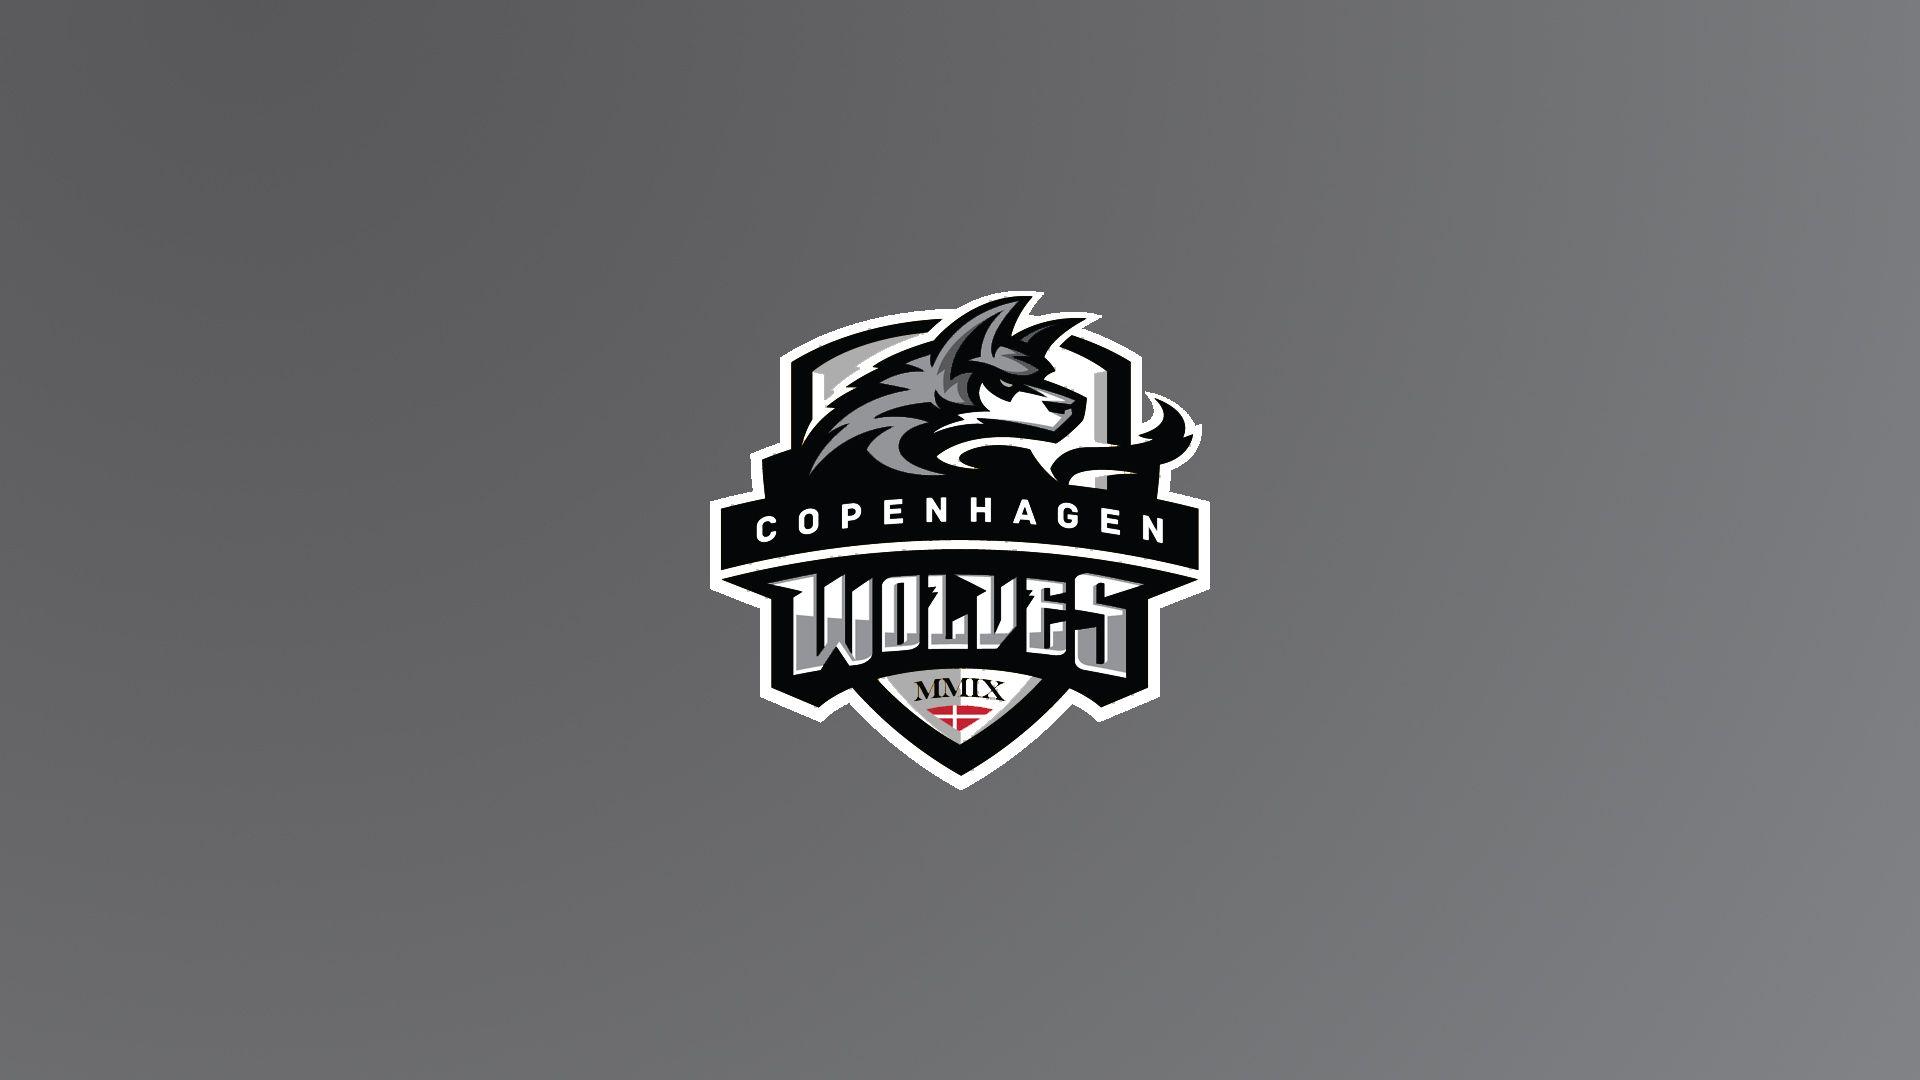 Copenhagen Wolves Esports Team HD Wallpaperx1080